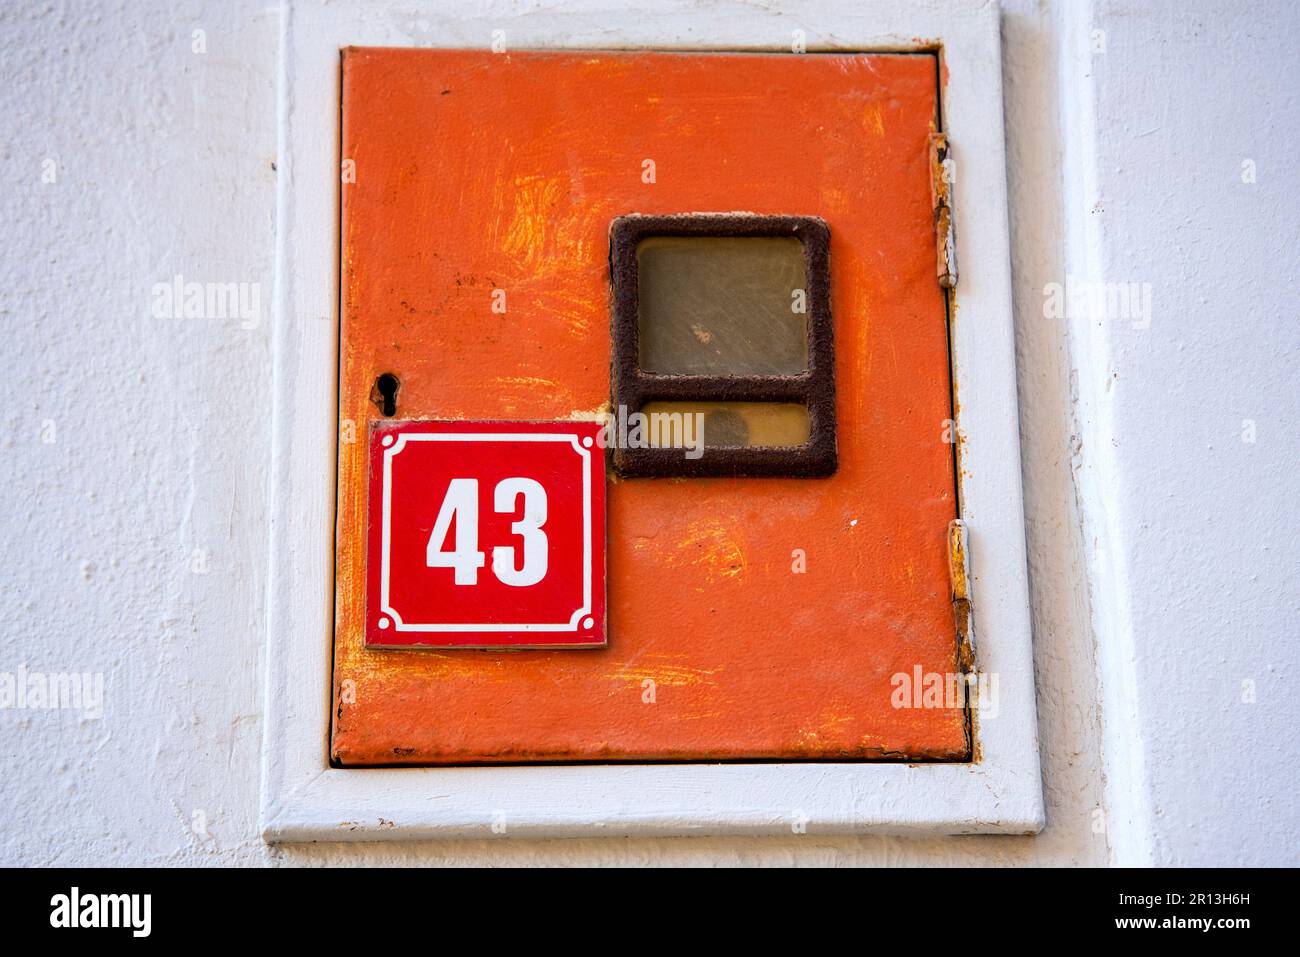 Una targhetta rossa con il numero civico che indica il numero 43. Un piccolo armadio da incasso. Foto Stock